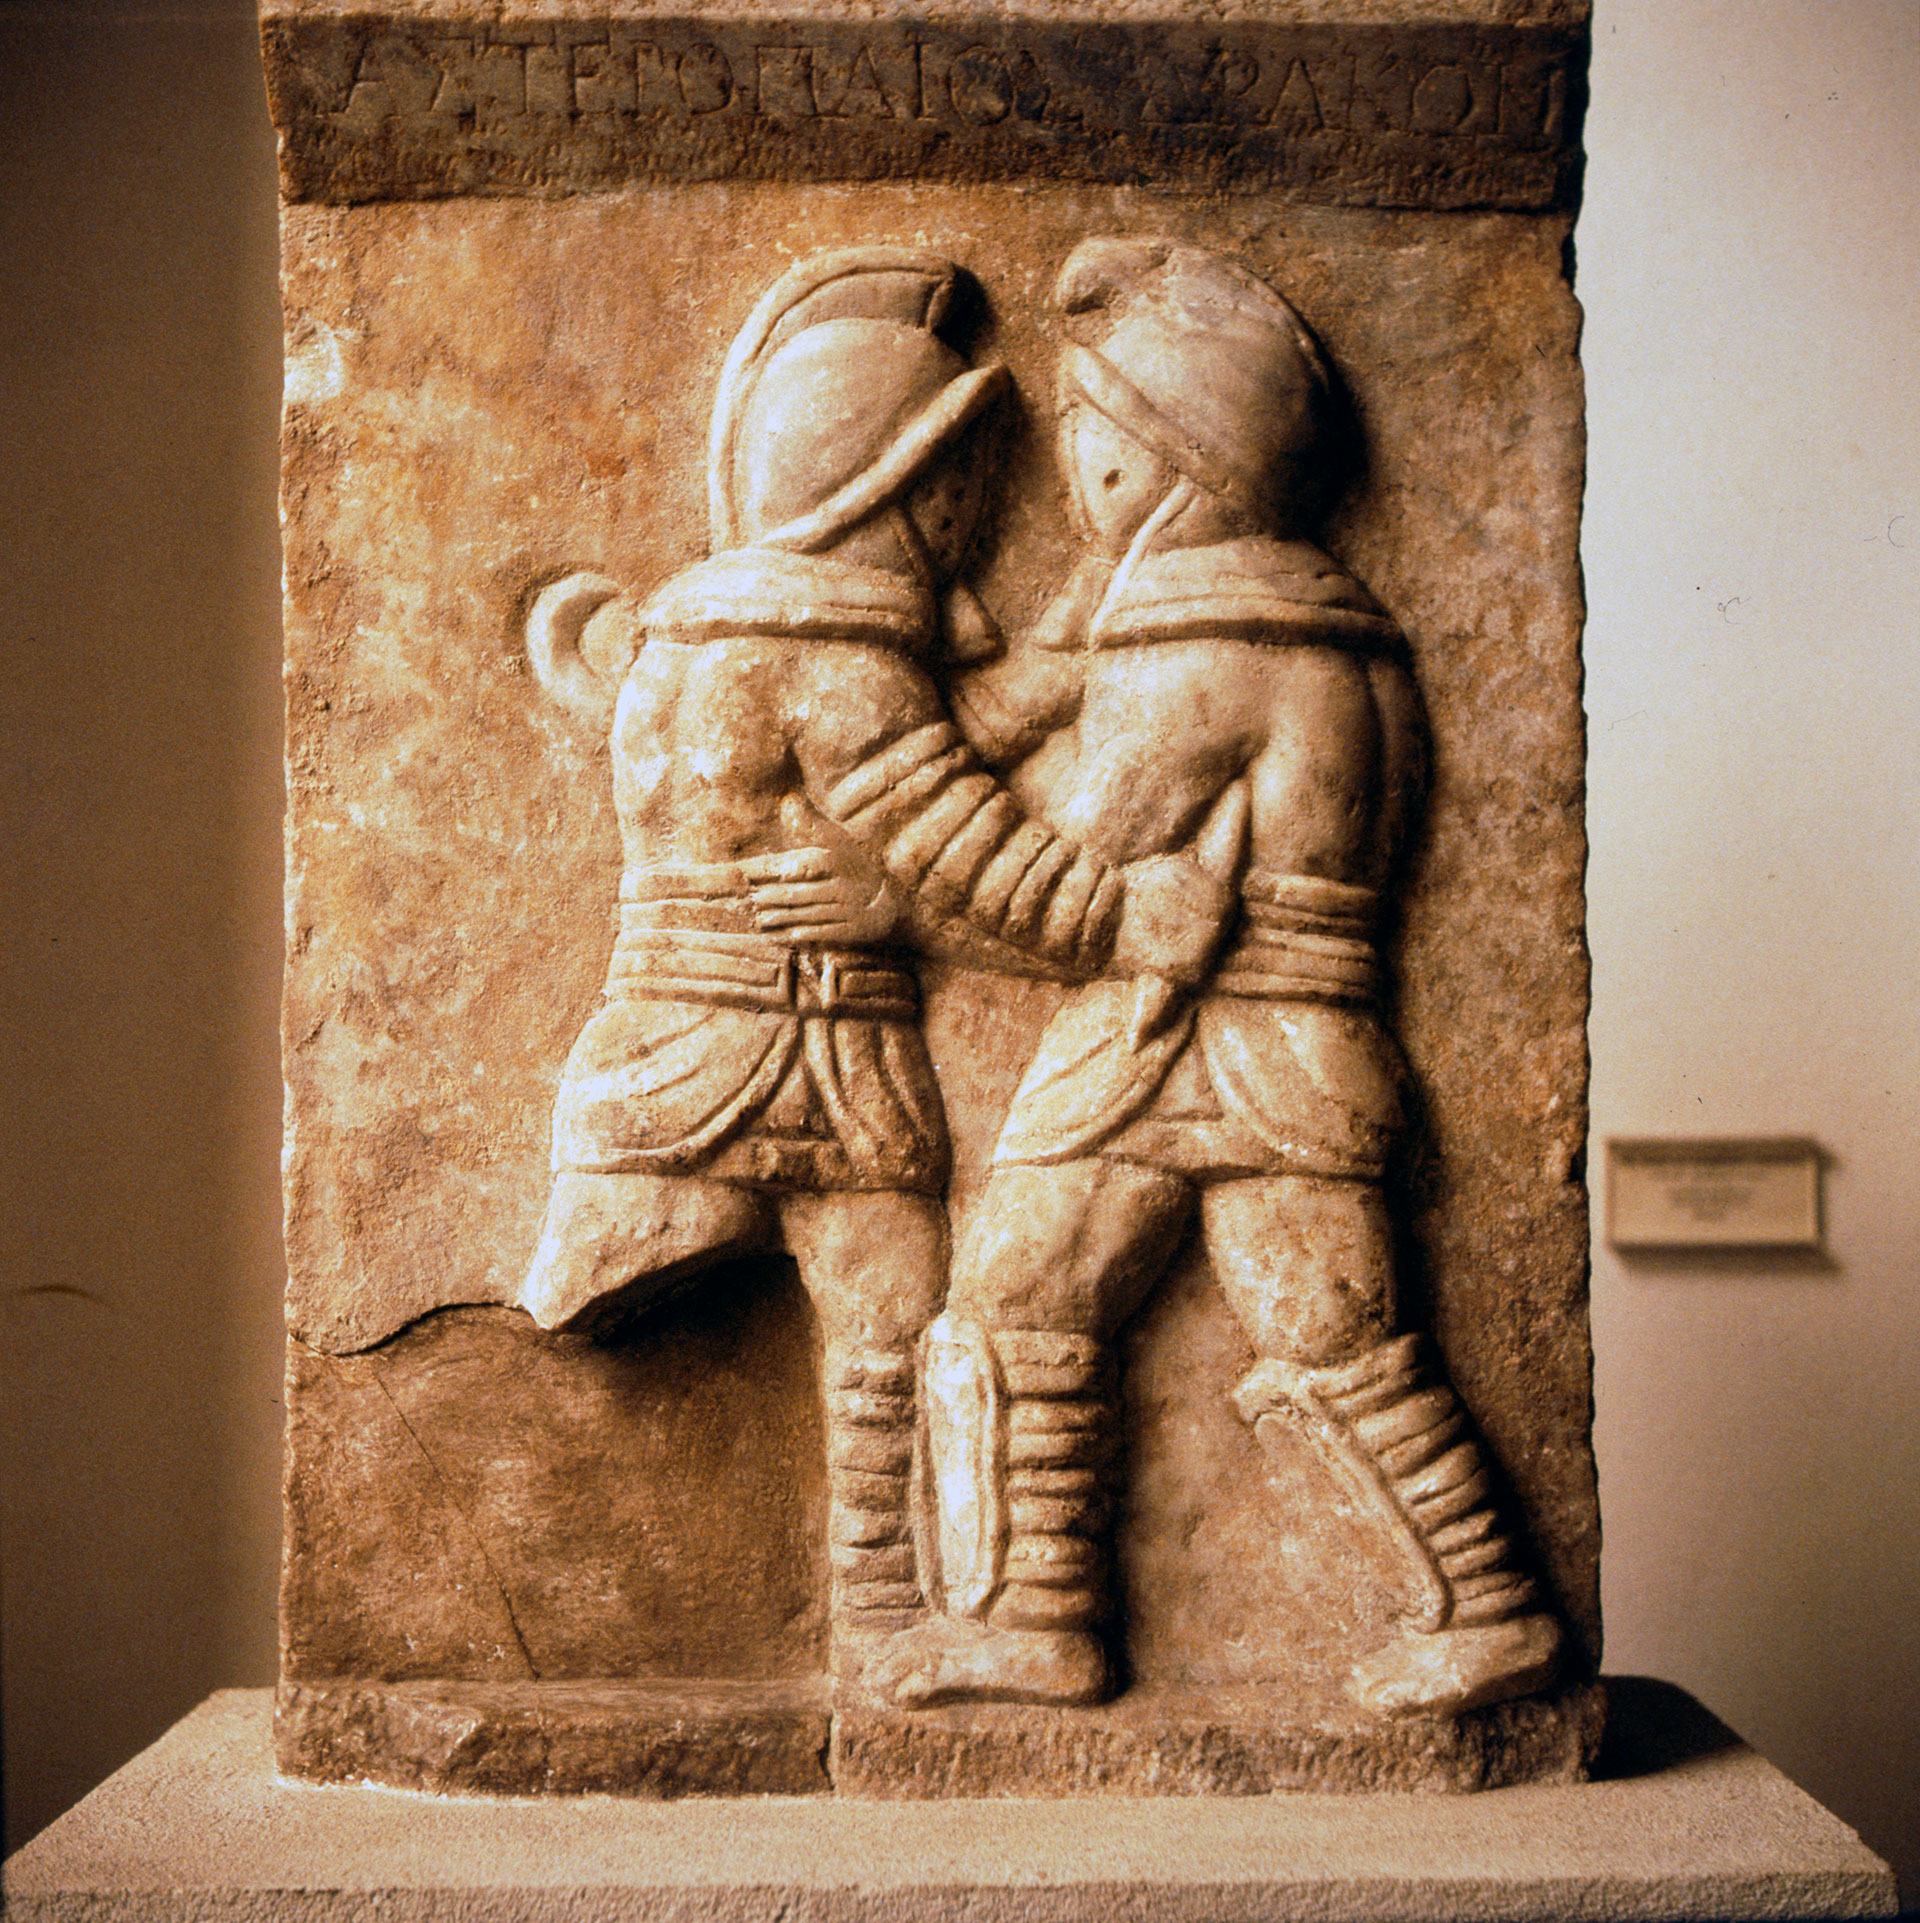 Combate entre dos gladiadores, relieve romano de Éfeso, siglo III. Mármol, en el Museo de Pérgamo, Berlín. Artista desconocido (Photo by CM Dixon/Heritage Images/Getty Images)